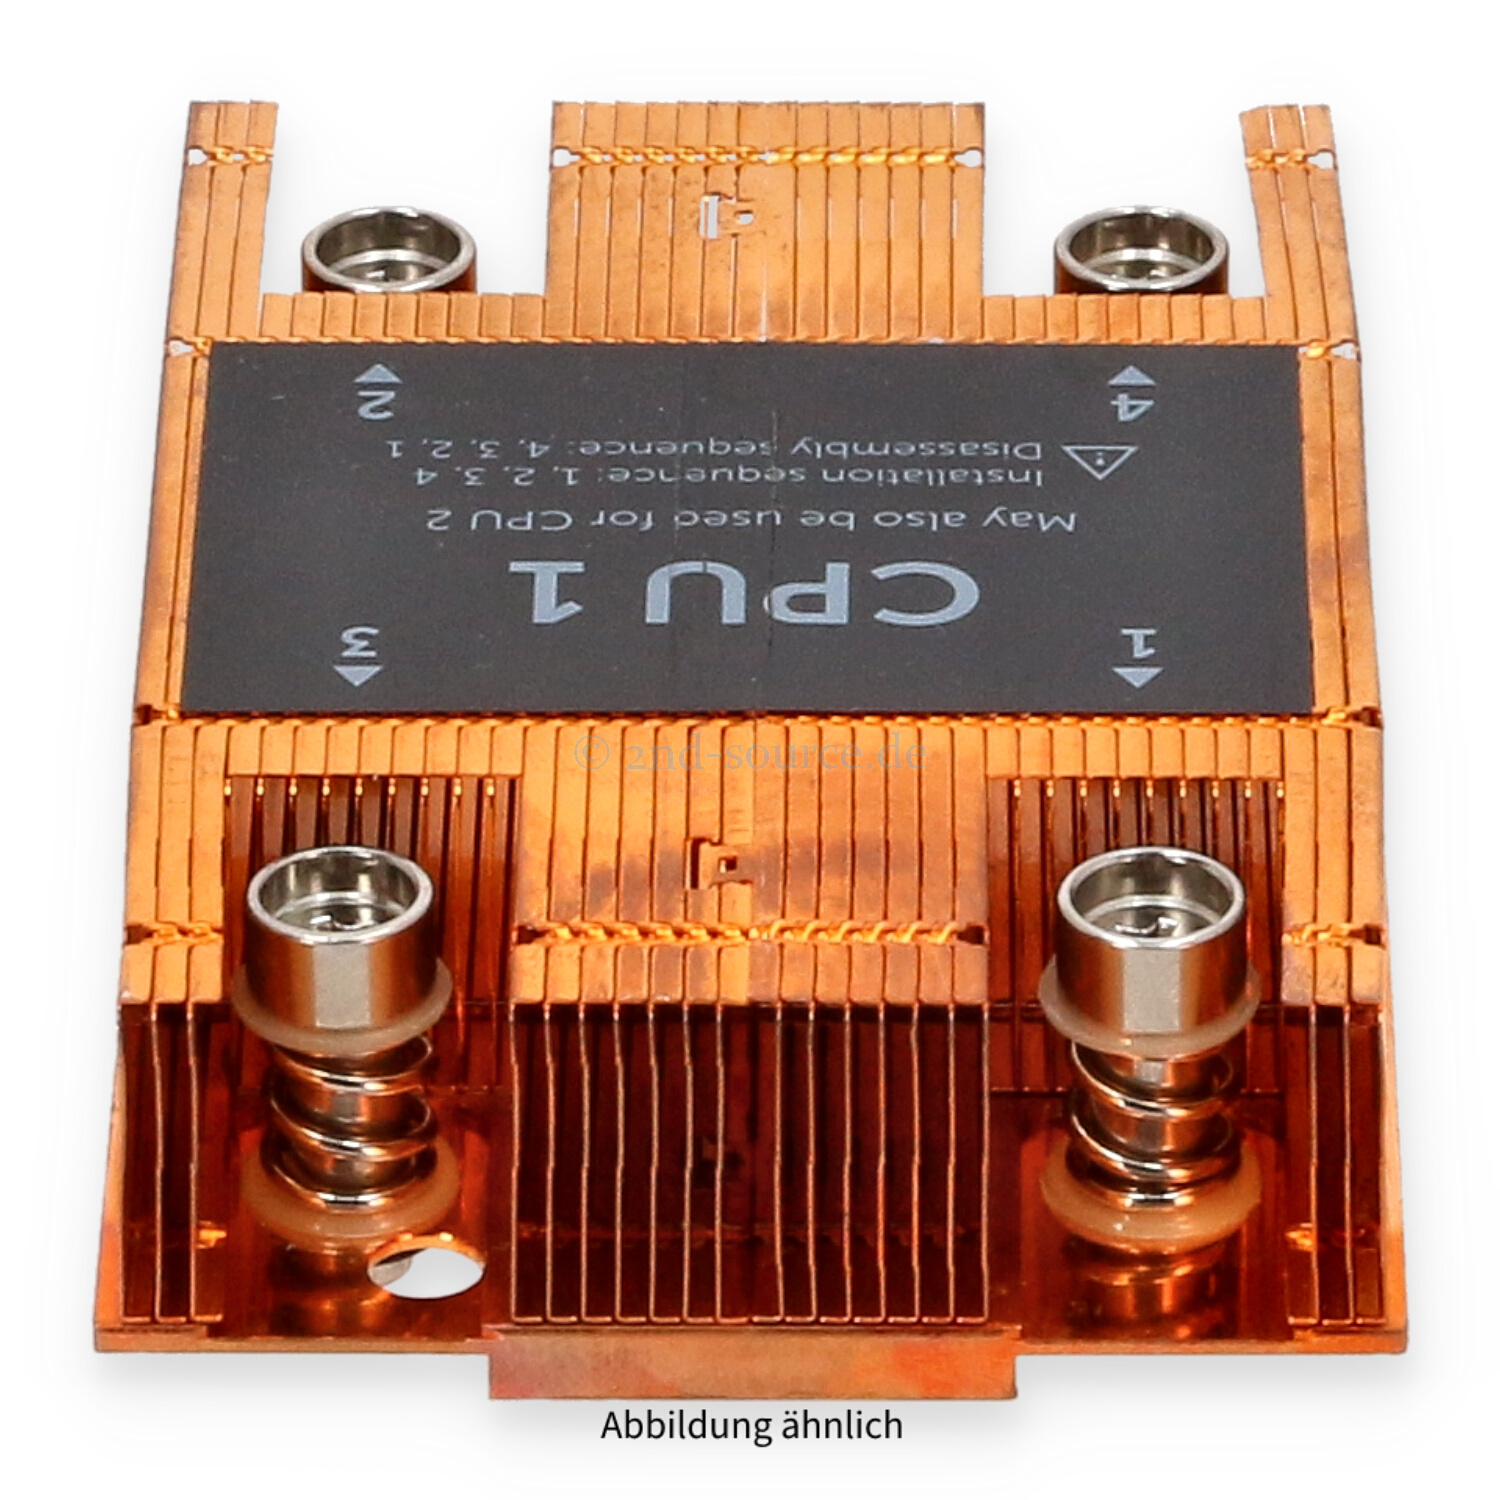 Dell Standard Heatsink CPU 1 68mm PowerEdge FC630 9MJHM 09MJHM